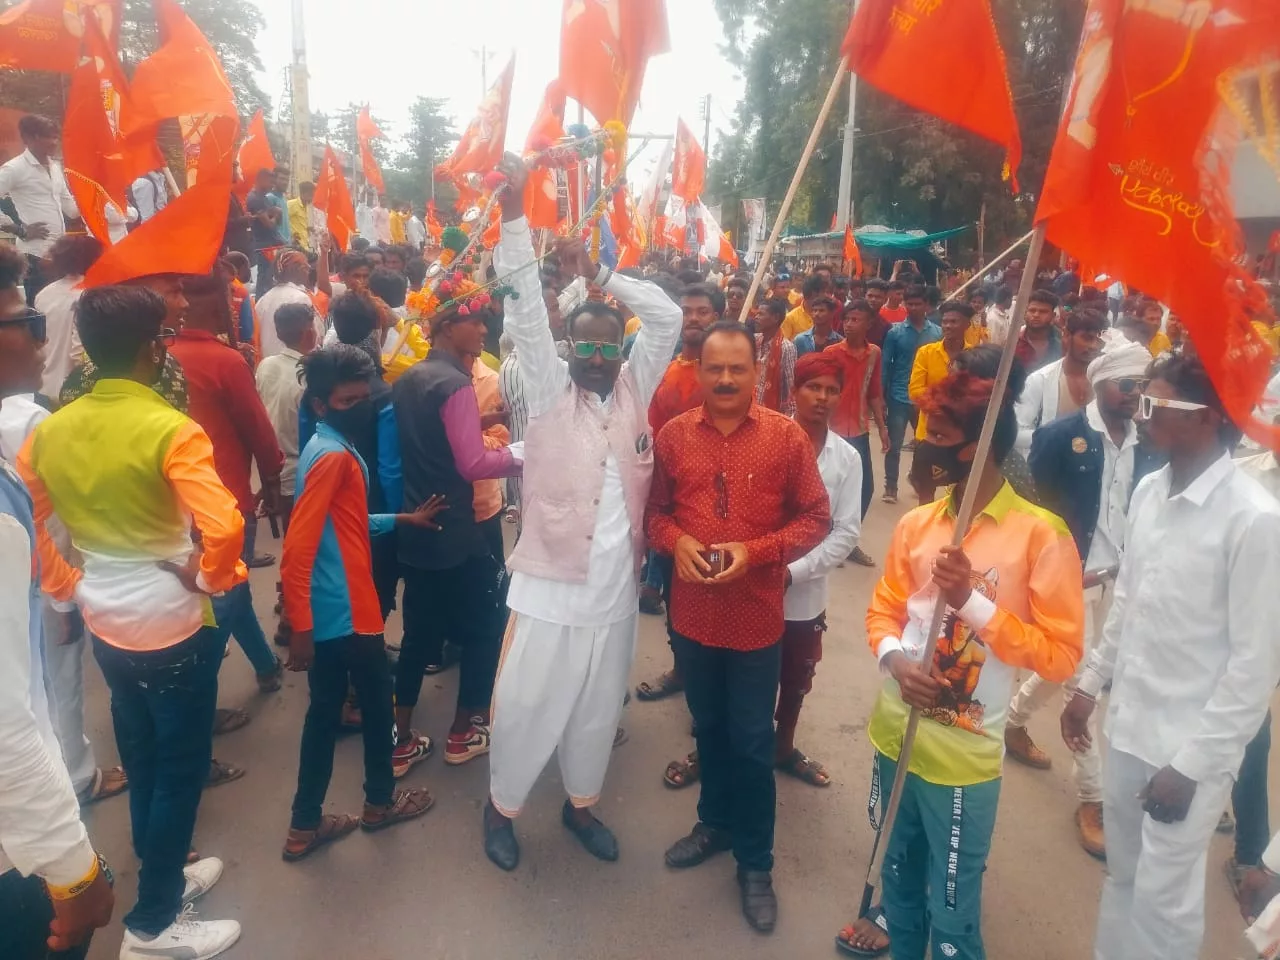 सड़क पर उतरा 'मणिपुर', महादंड नायक को नमन कर निकली रैली, लाल झंडों से रंगीं सड़कें, आदिवासी एकता का हुआ अप्रतिम दर्शन | New India Times